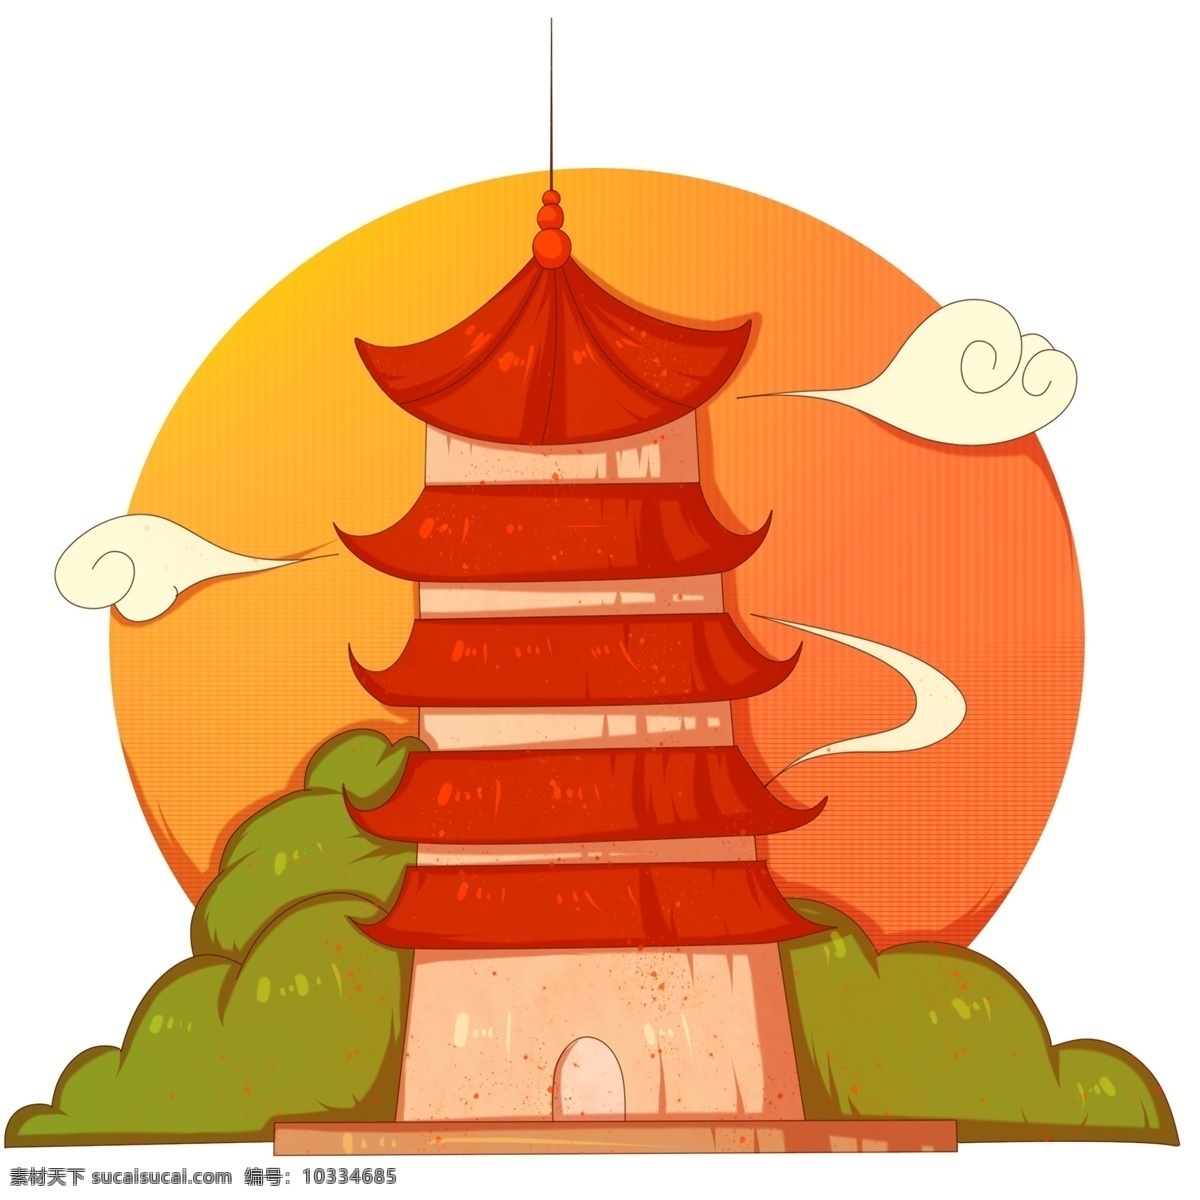 手绘 杭州 地标 插画 红色的大塔 杭州地标 卡通的插画 地标建筑杭州 漂亮的地标 美丽的杭州